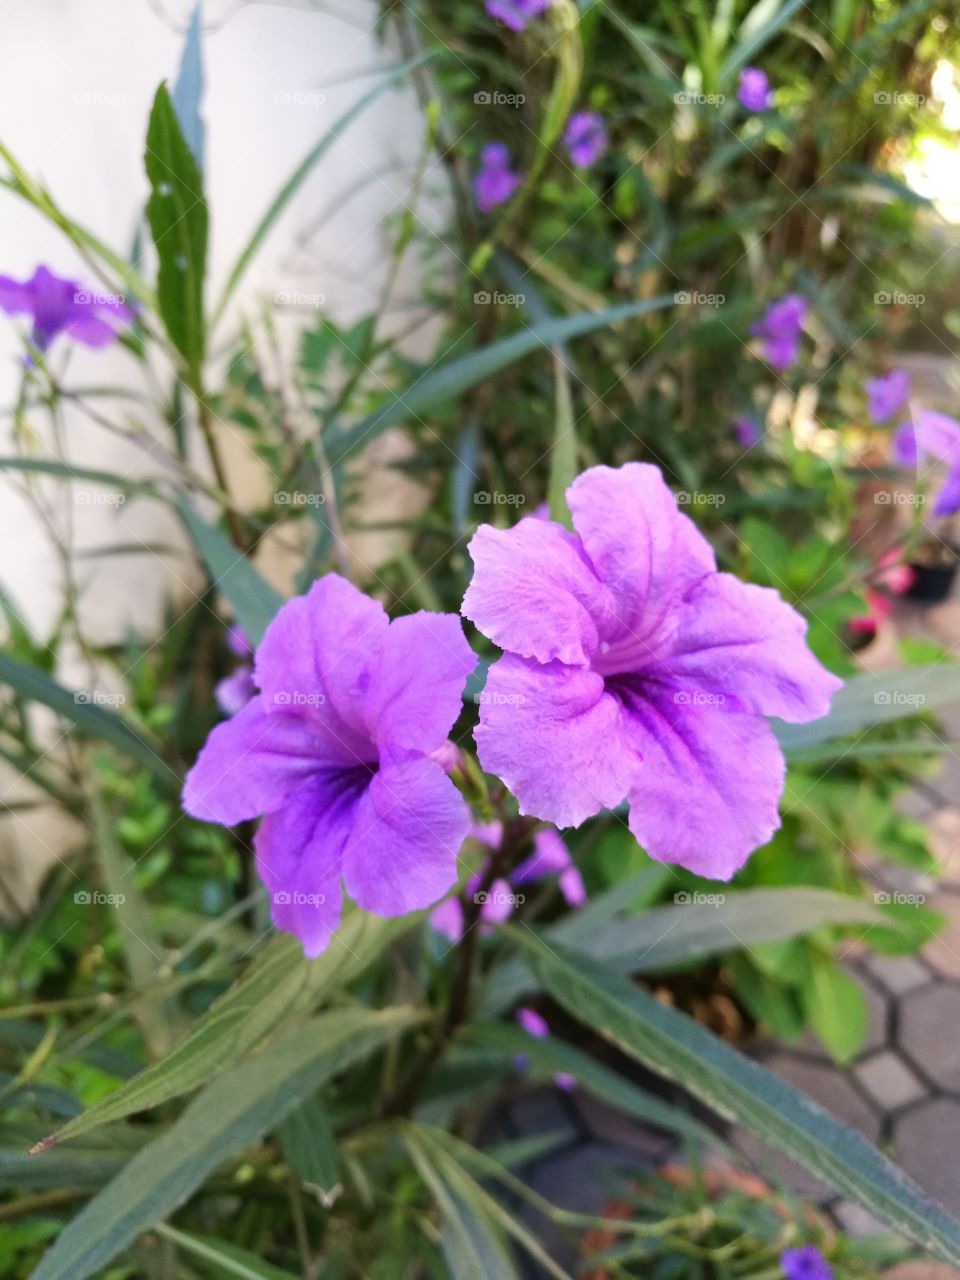 Two beautiful purple waterkanon flowers bloom in garden.